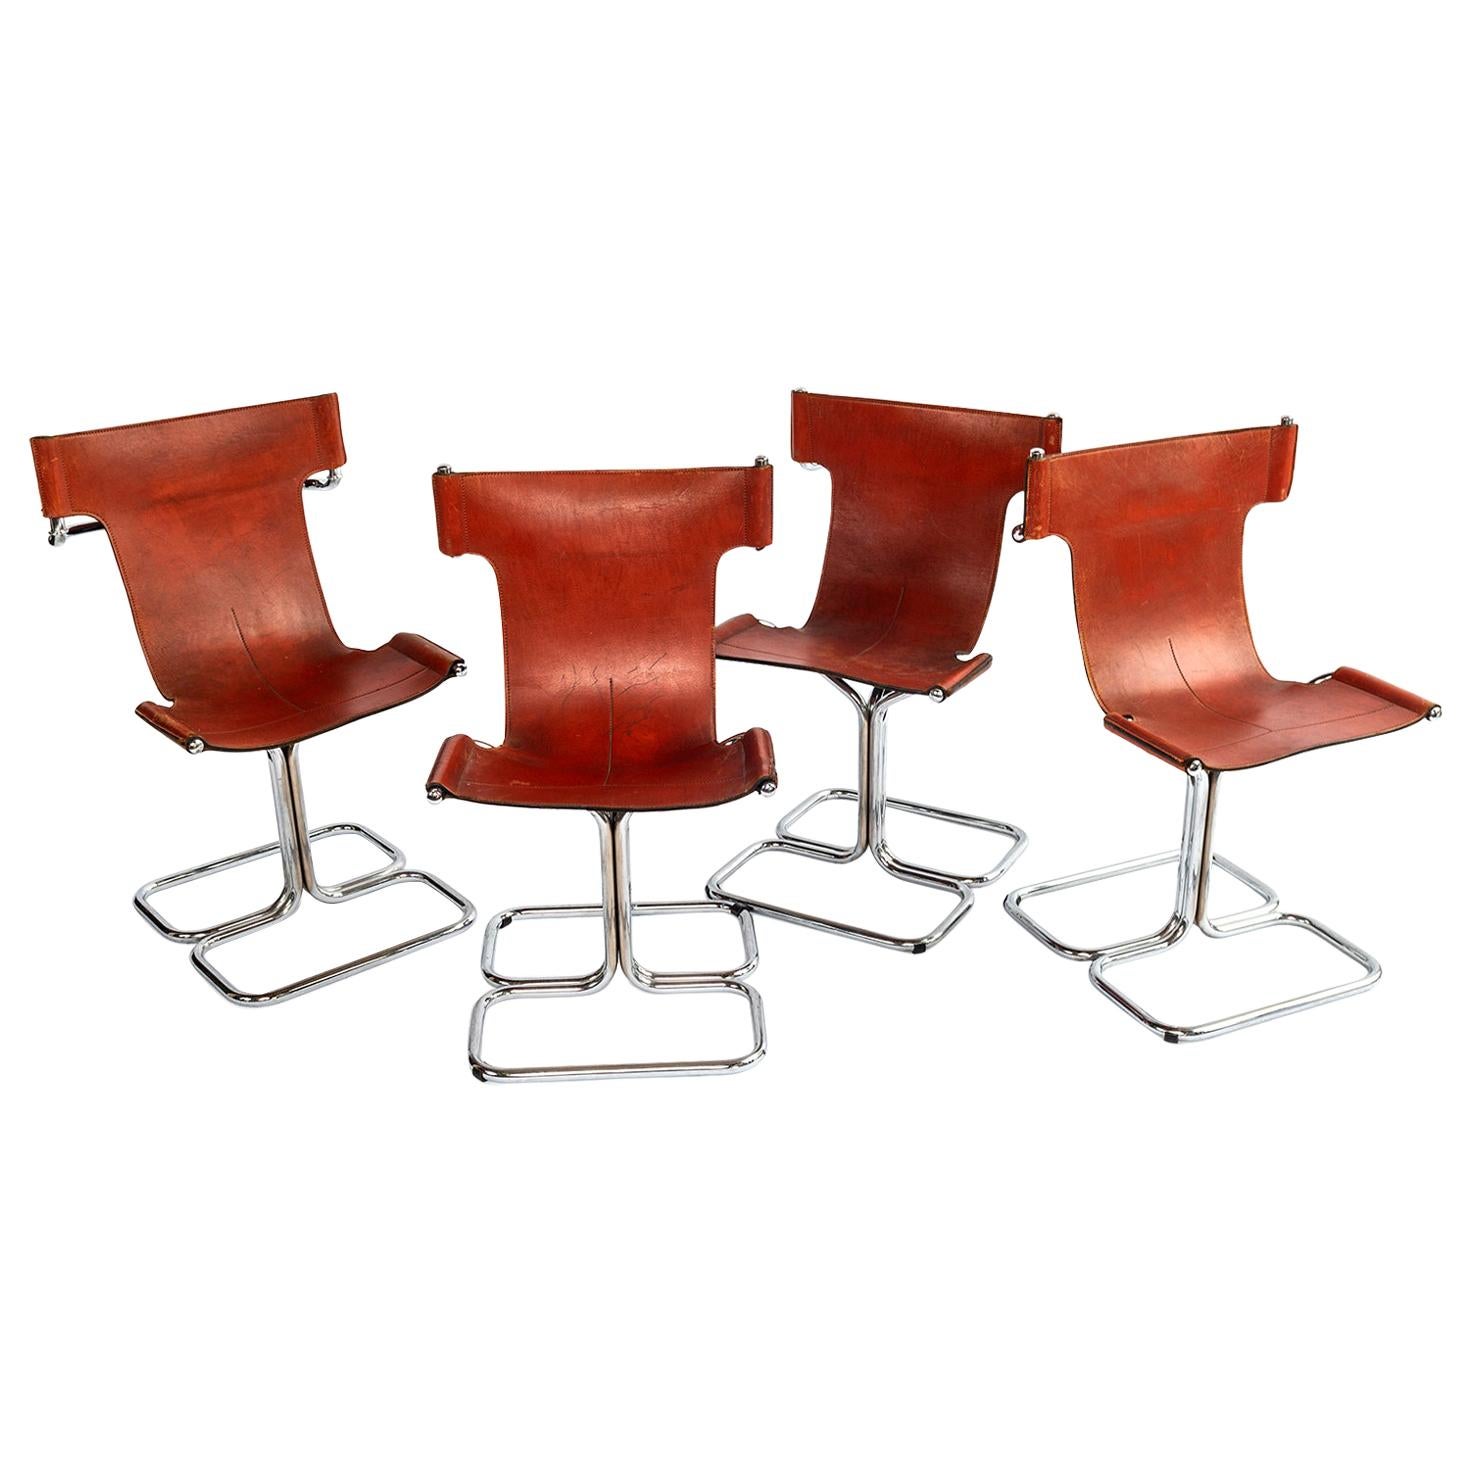 Ensemble de quatre chaises en T en chrome et cuir cognac, de style mi-siècle moderne.